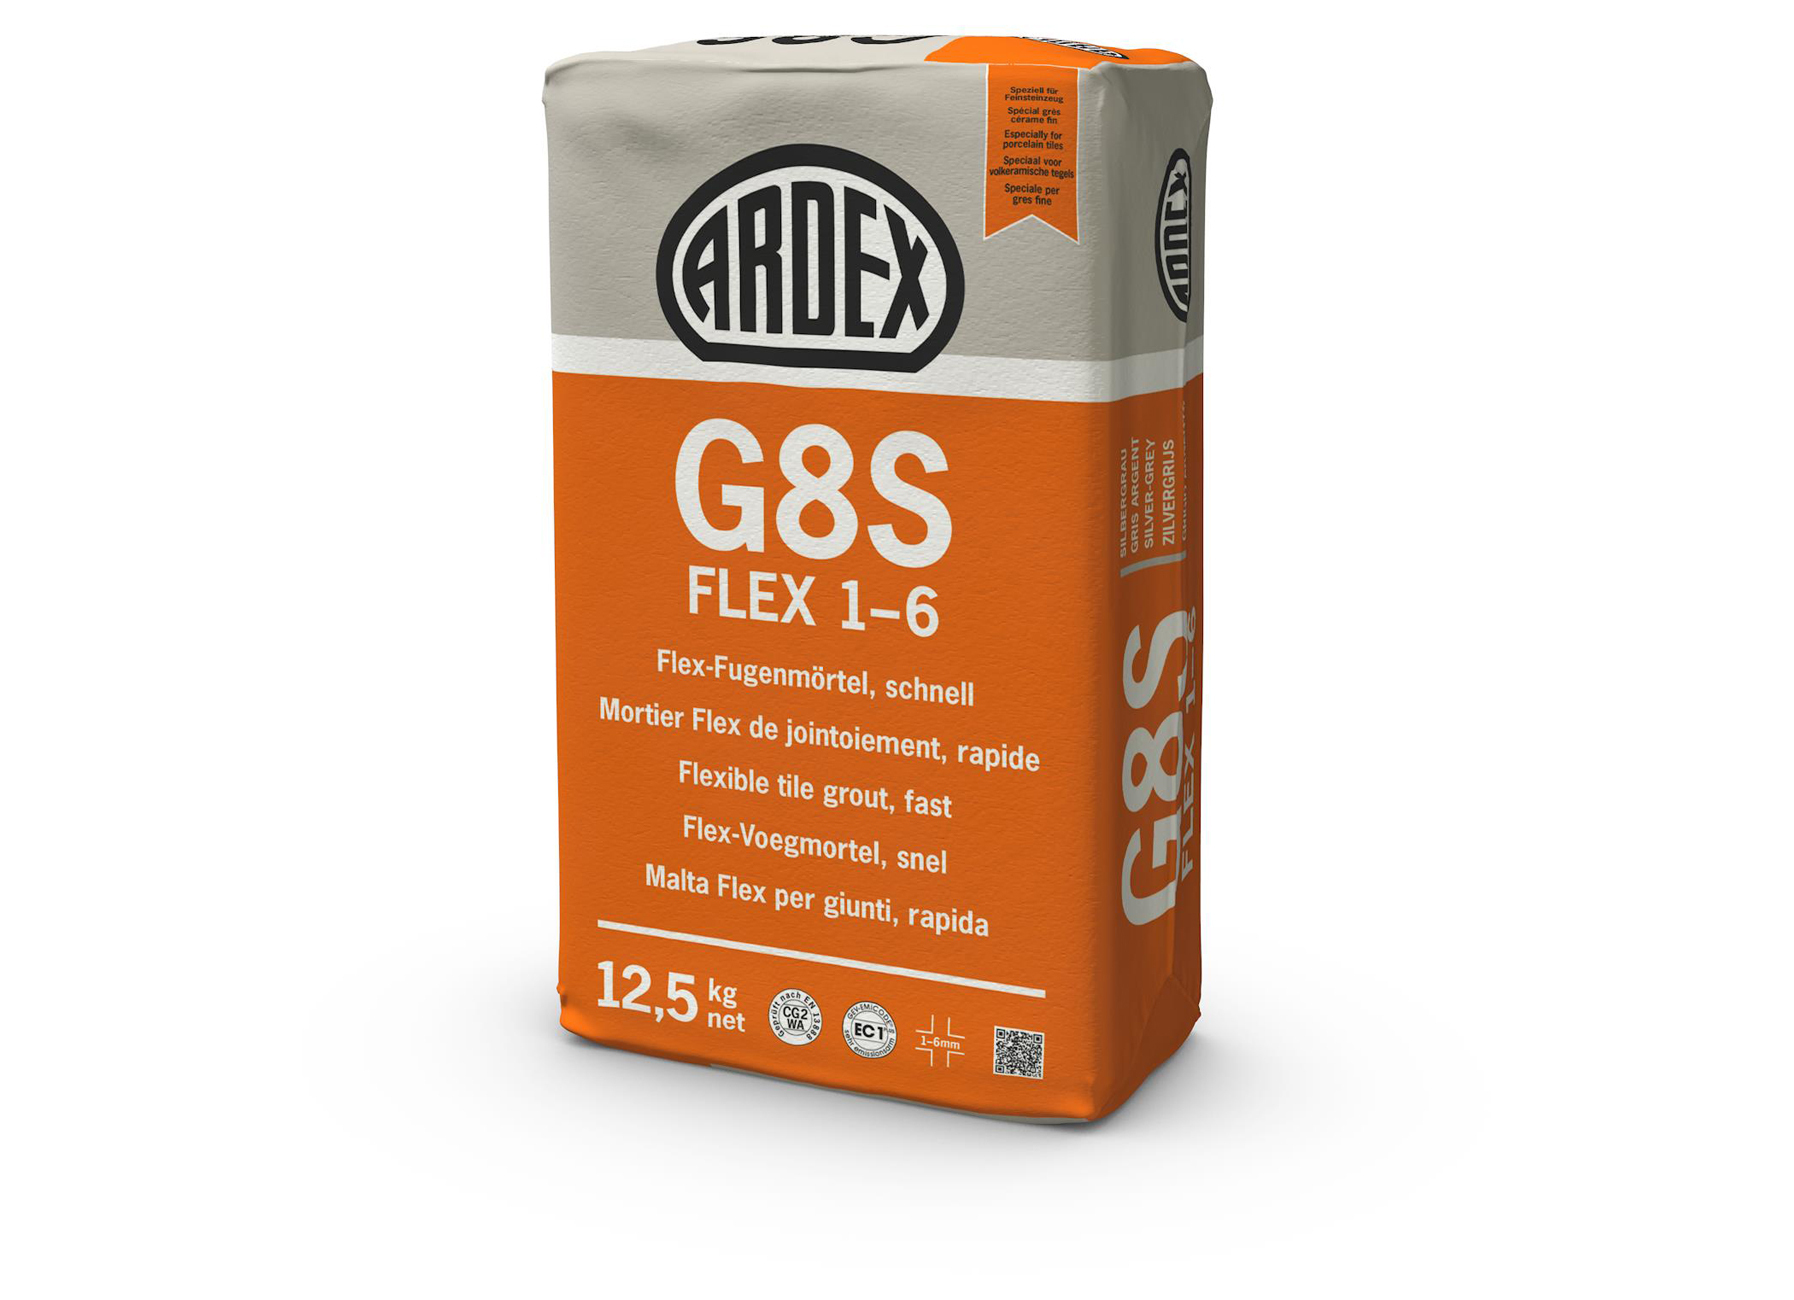 G8S FLEX 1-6 ZILVERGRIJS 12.5KG